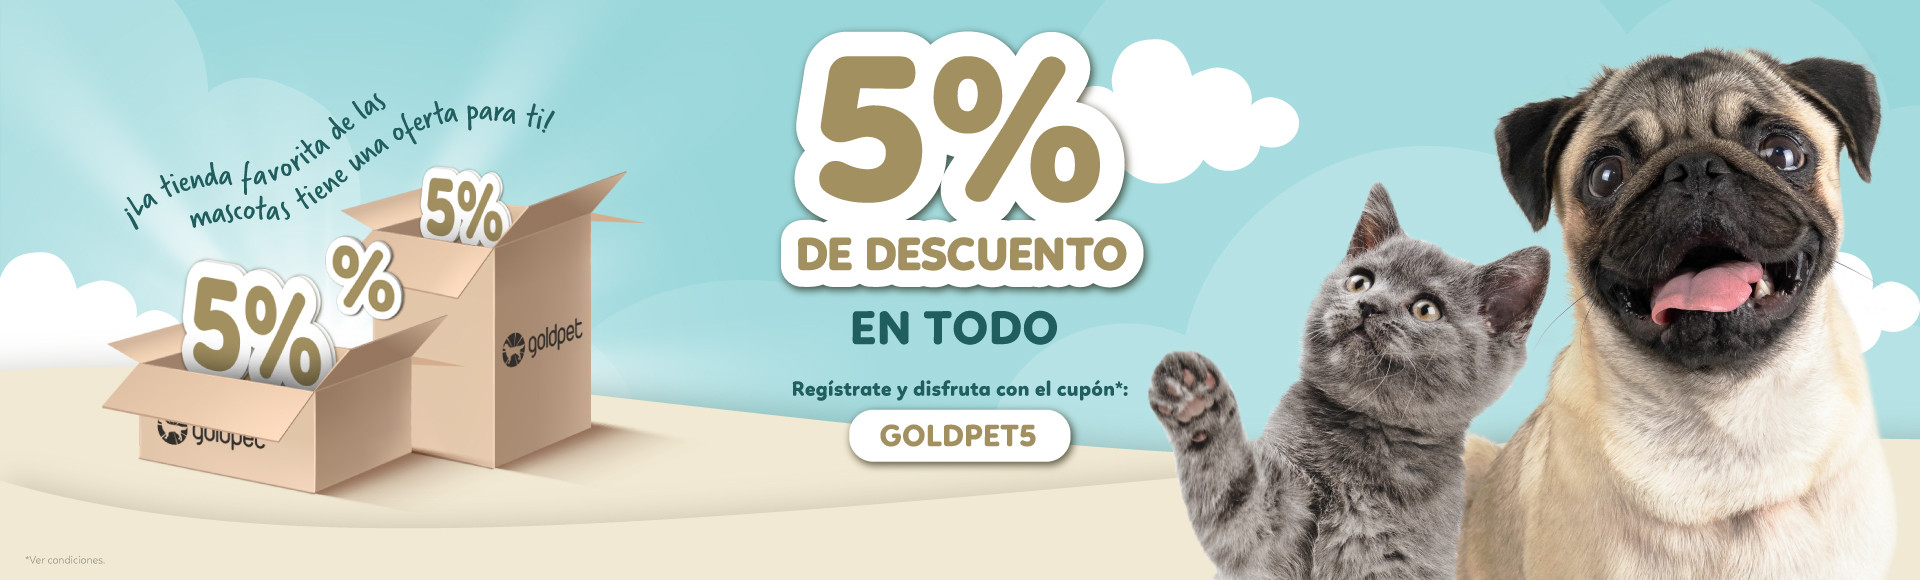 La tienda favorita de las mascotas tiene una oferta para ti. 5% DE DESCUENTO EN TODO.